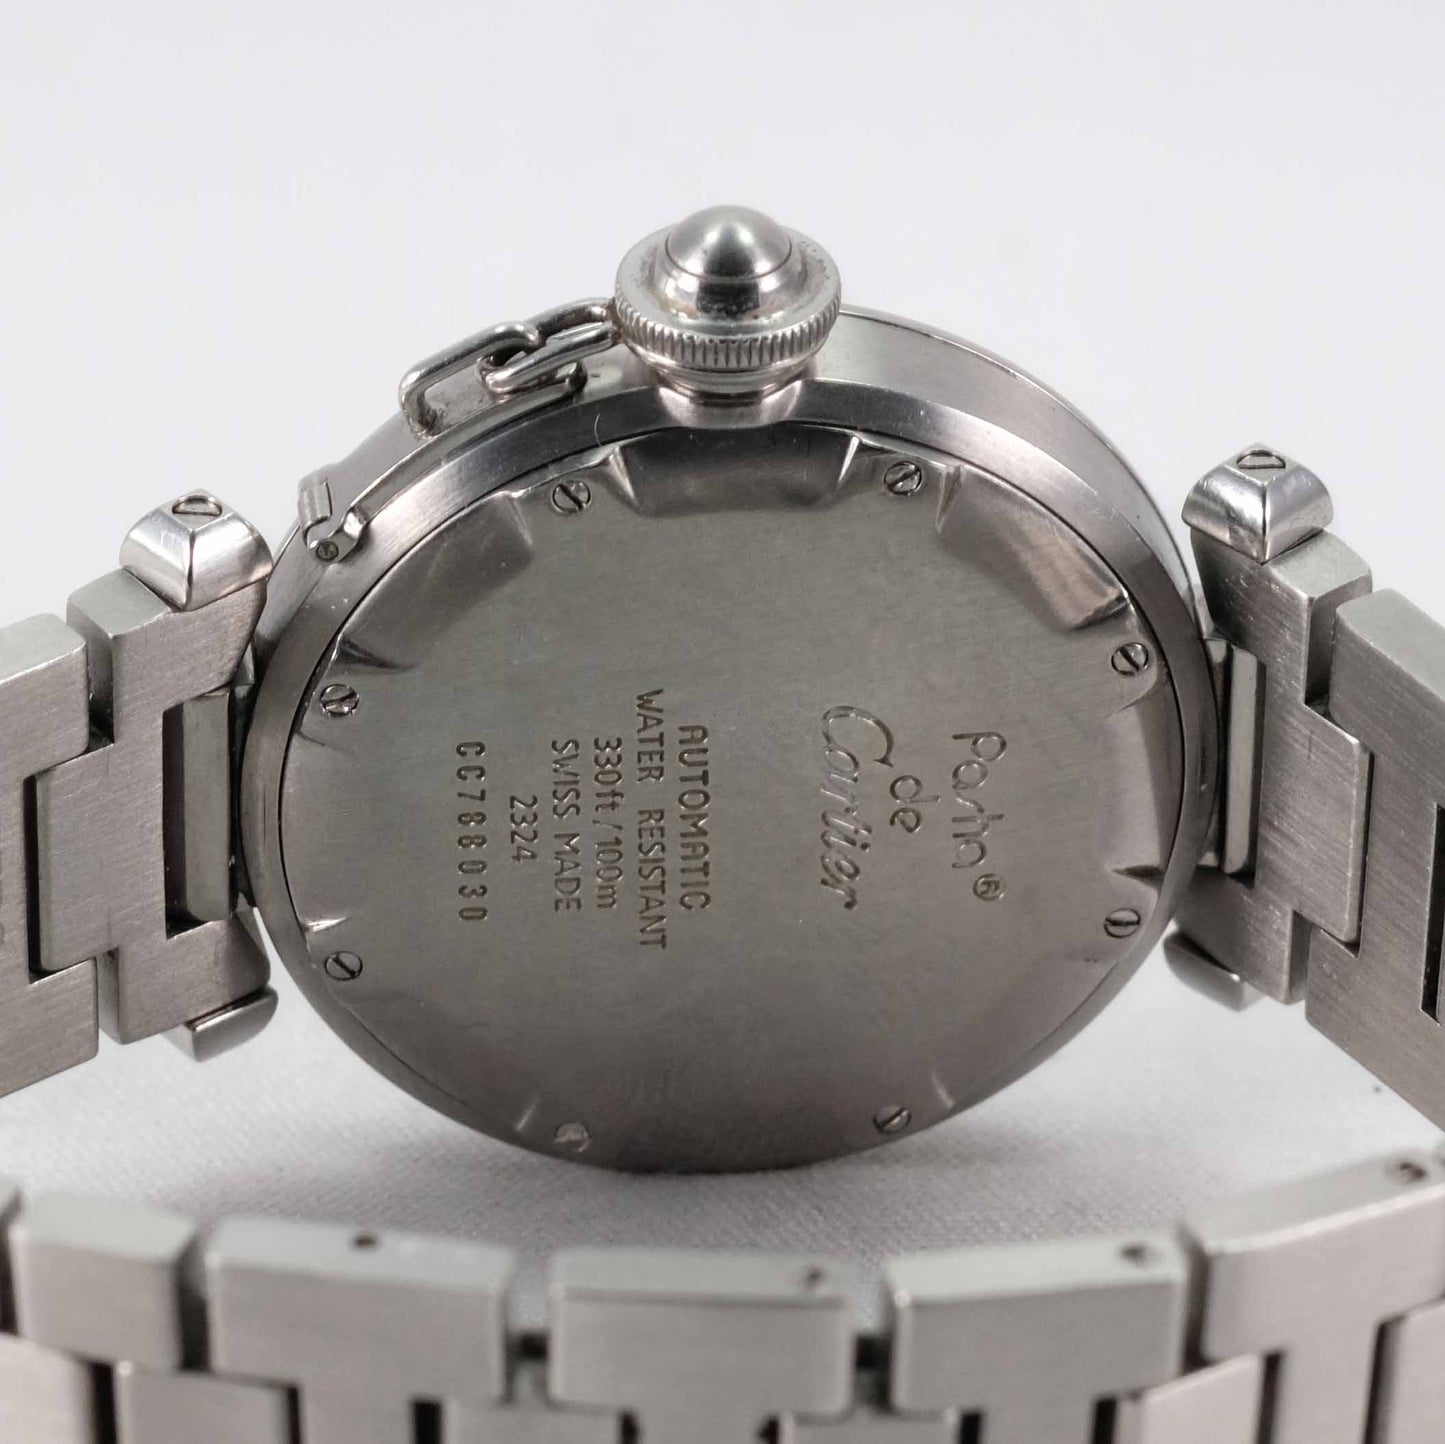 Pasha De Cartier 2324 automatic watch